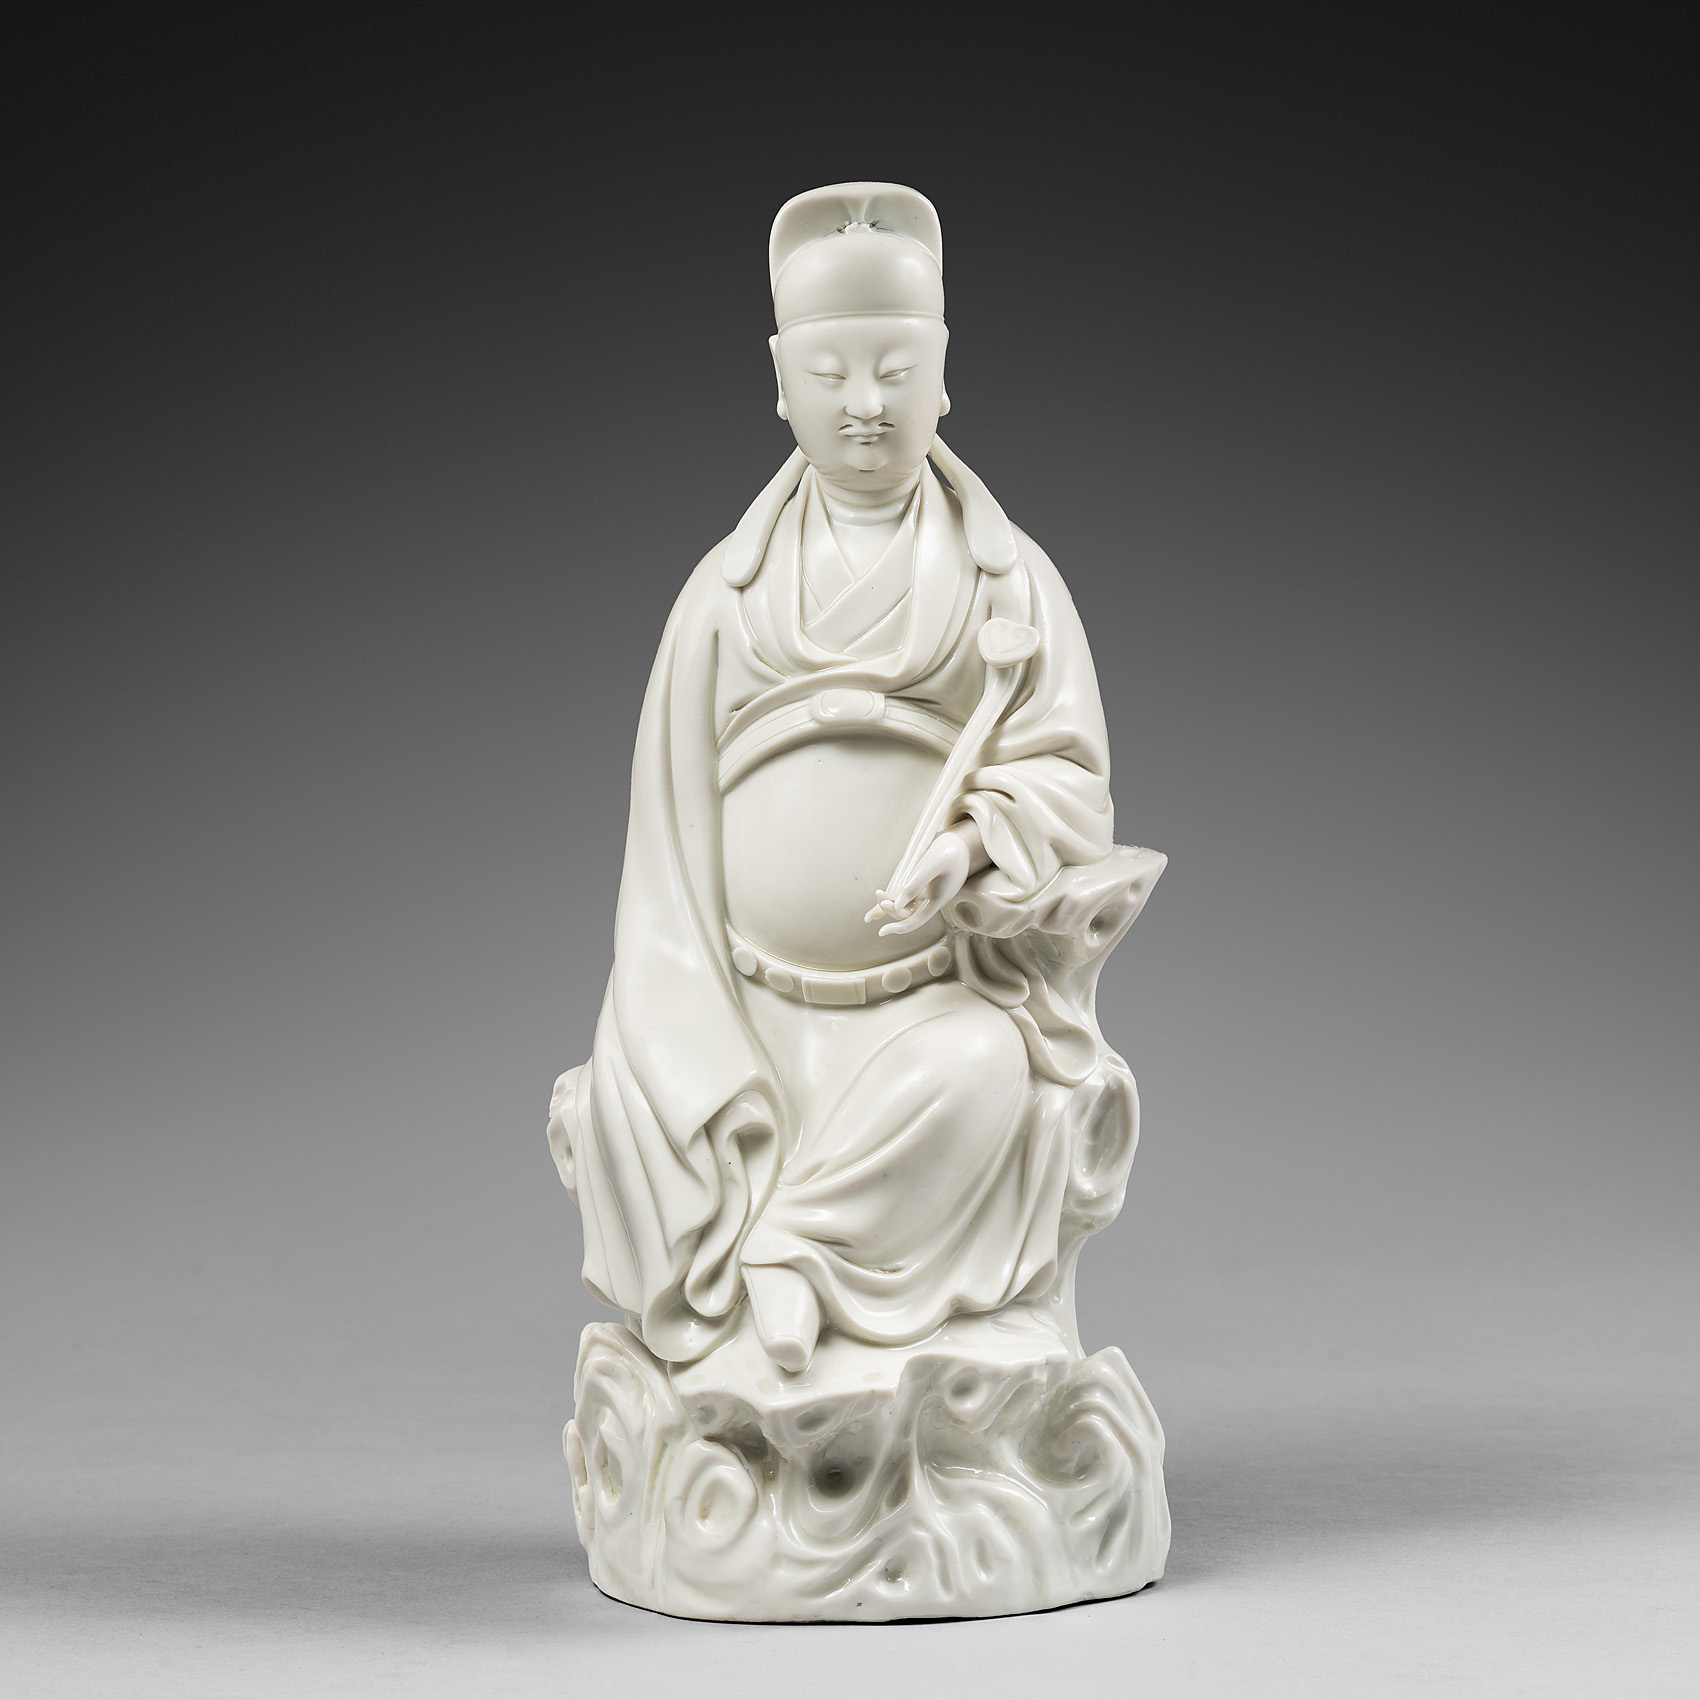 Porcelain 17th century , China (Dehua)